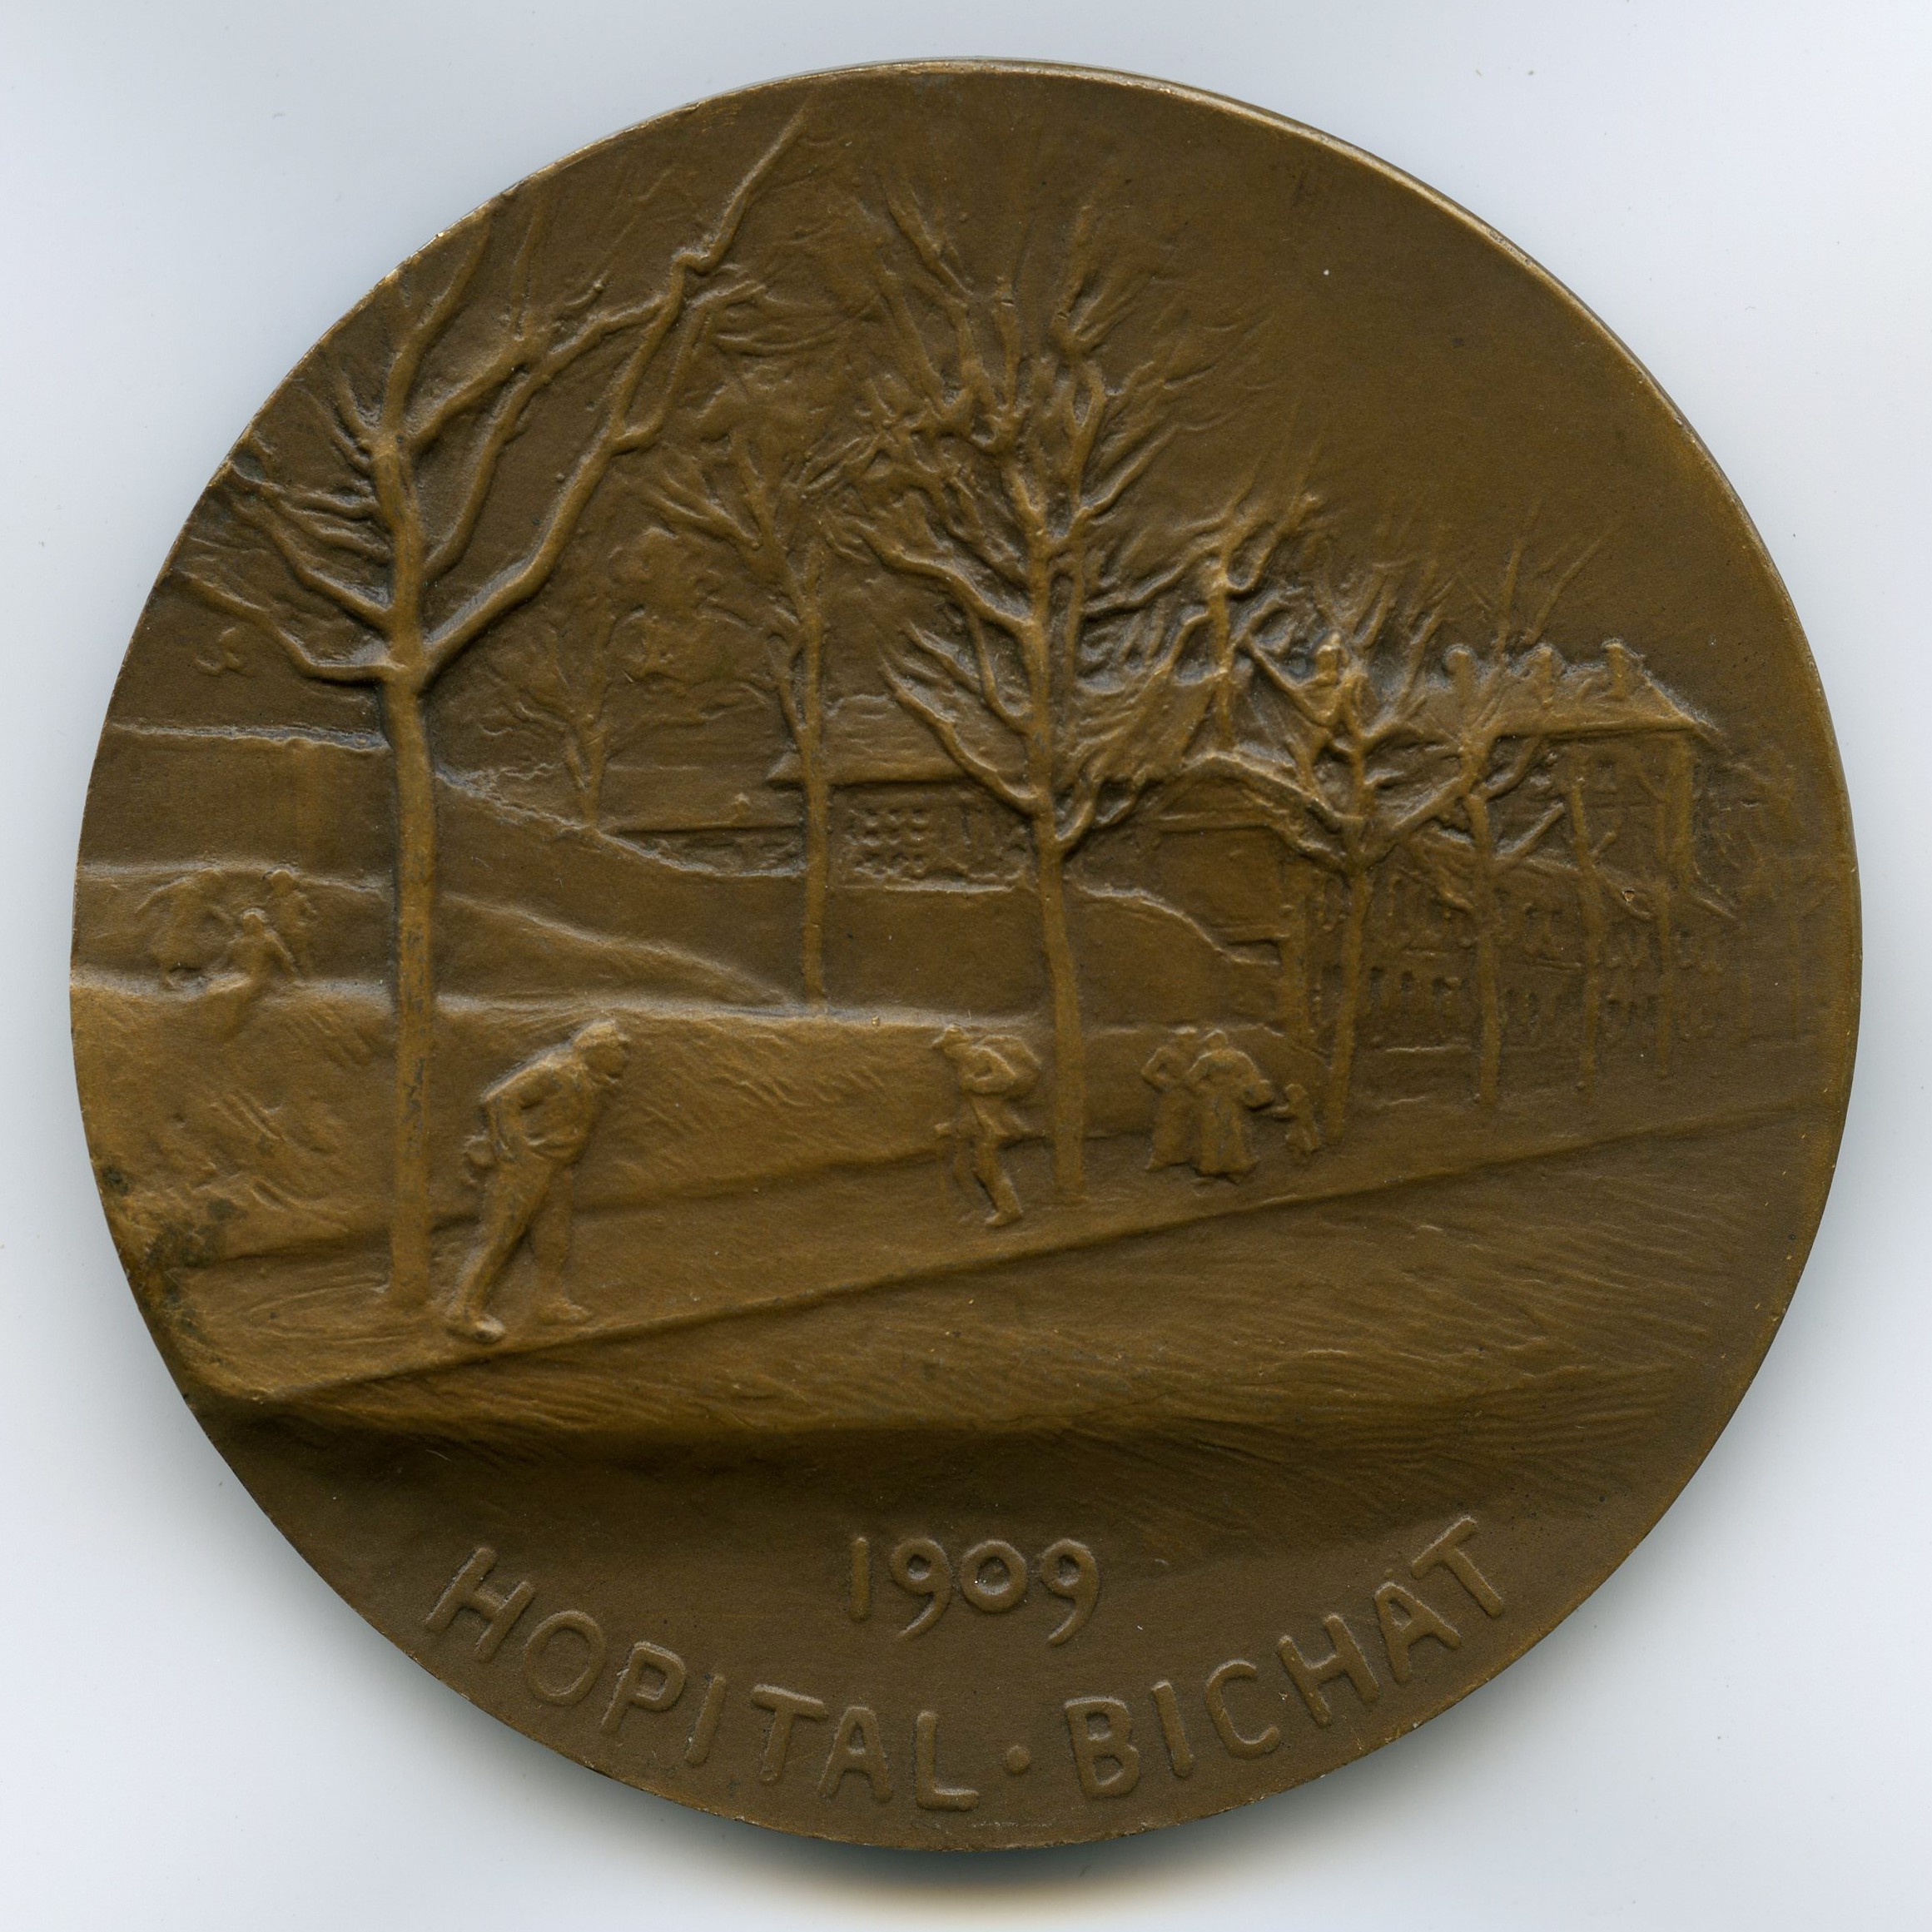 Dr HARTMANN - Médaille Bronze - 1909 revers